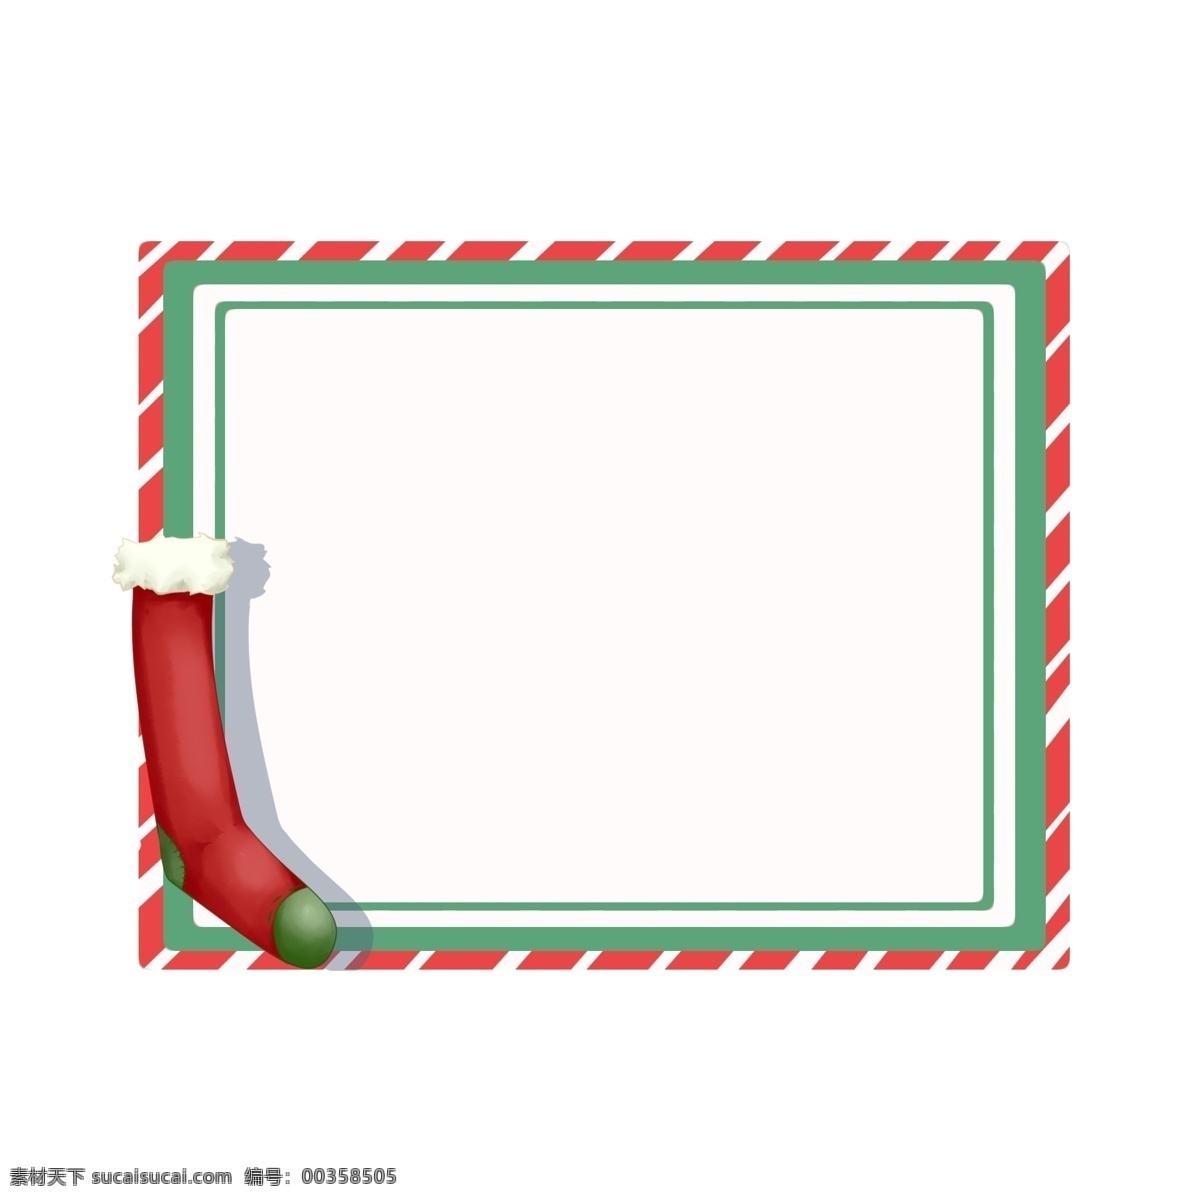 圣诞节 圣诞 袜 边框 红色的边框 漂亮的边框 手绘边框 可爱的边框 手绘 红色的圣诞袜